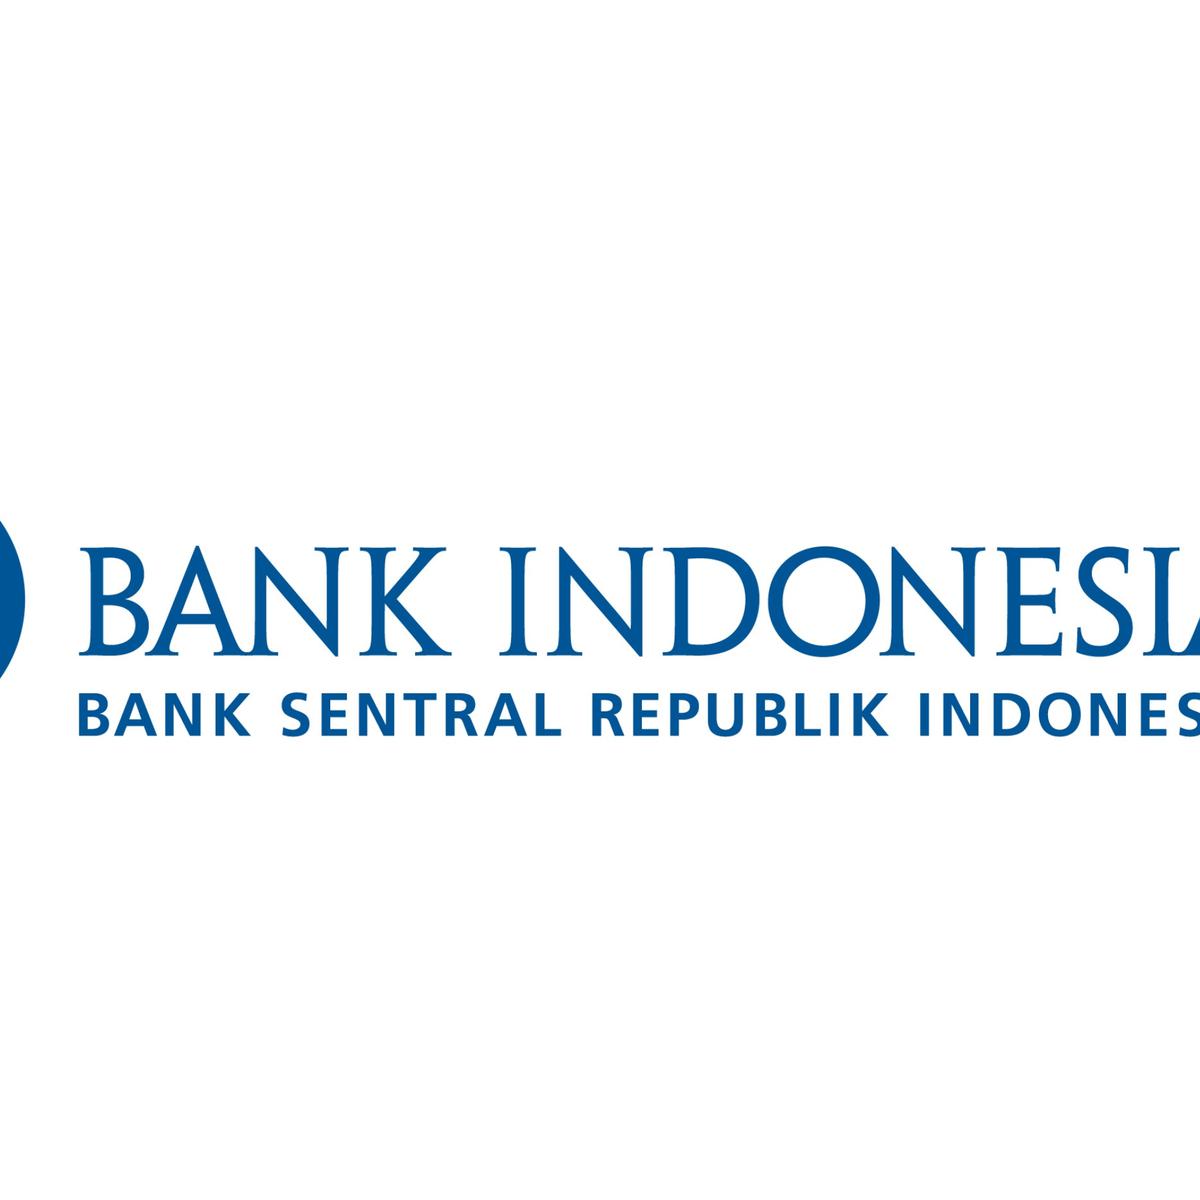 status bank indonesia sebagai bank sentral diatur dalam